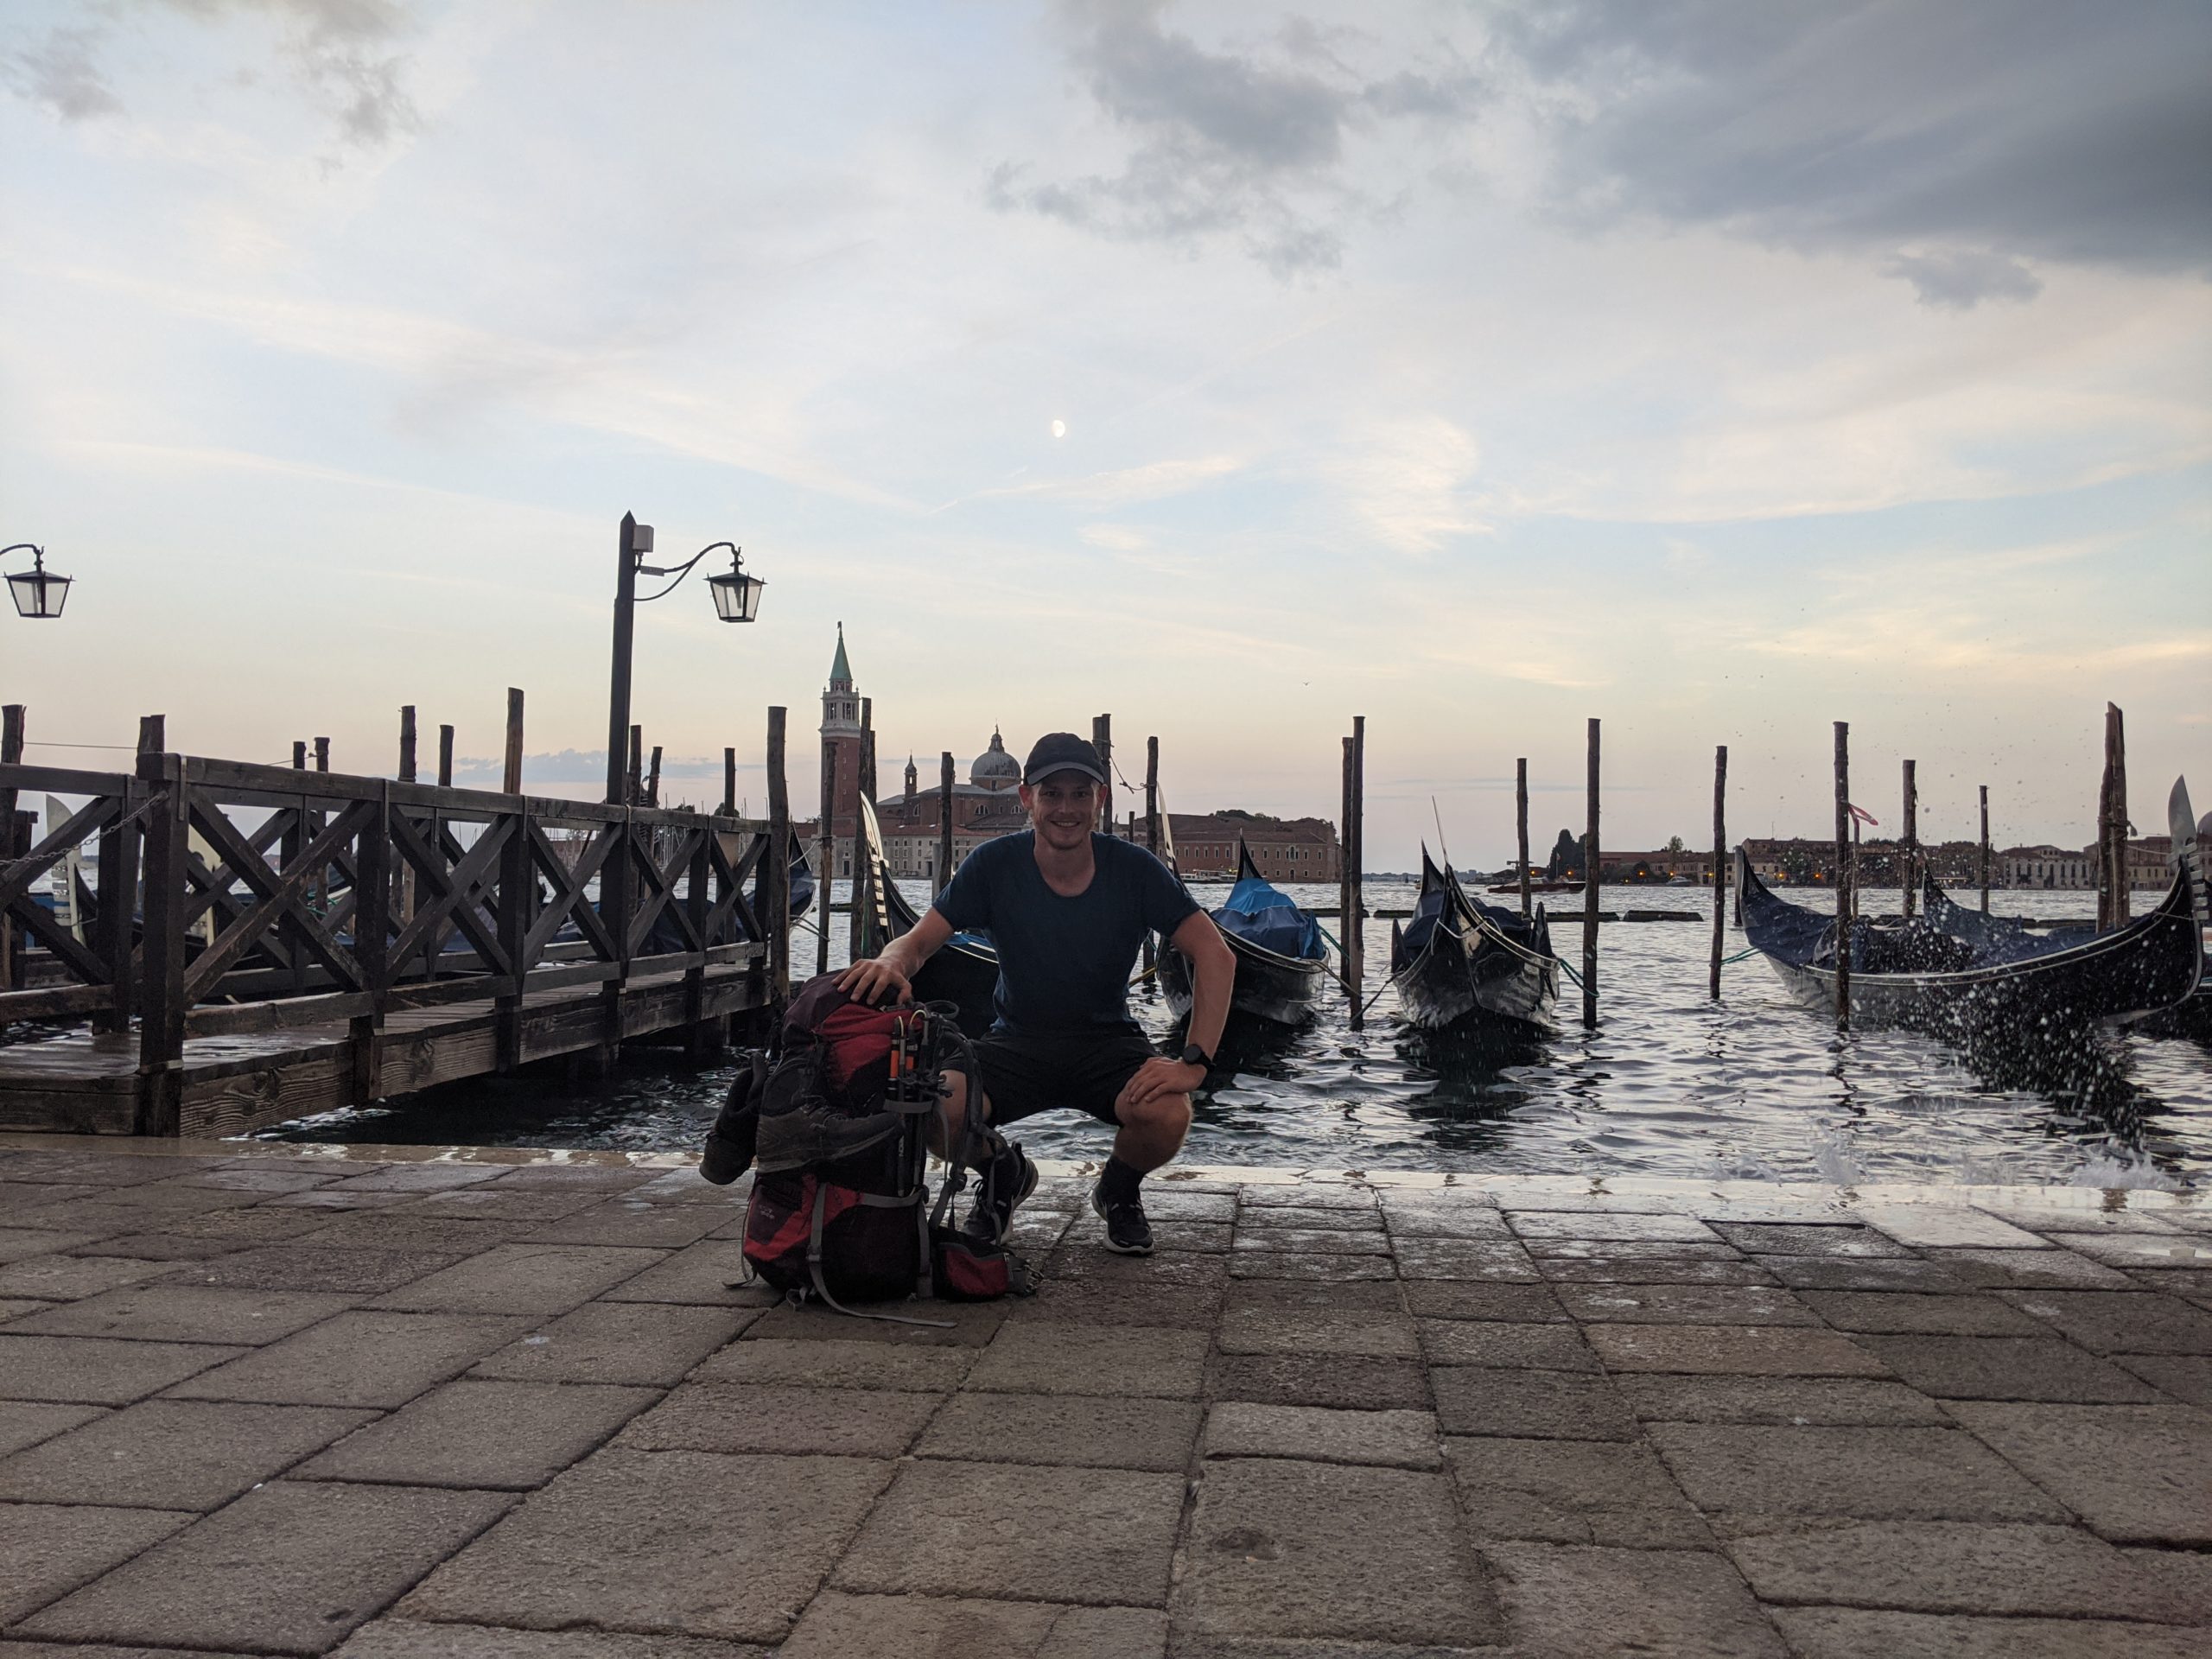 Ankunft in Venedig - Thomas sitzt vor der Bucht. Im Hintergrund sind Gondeln